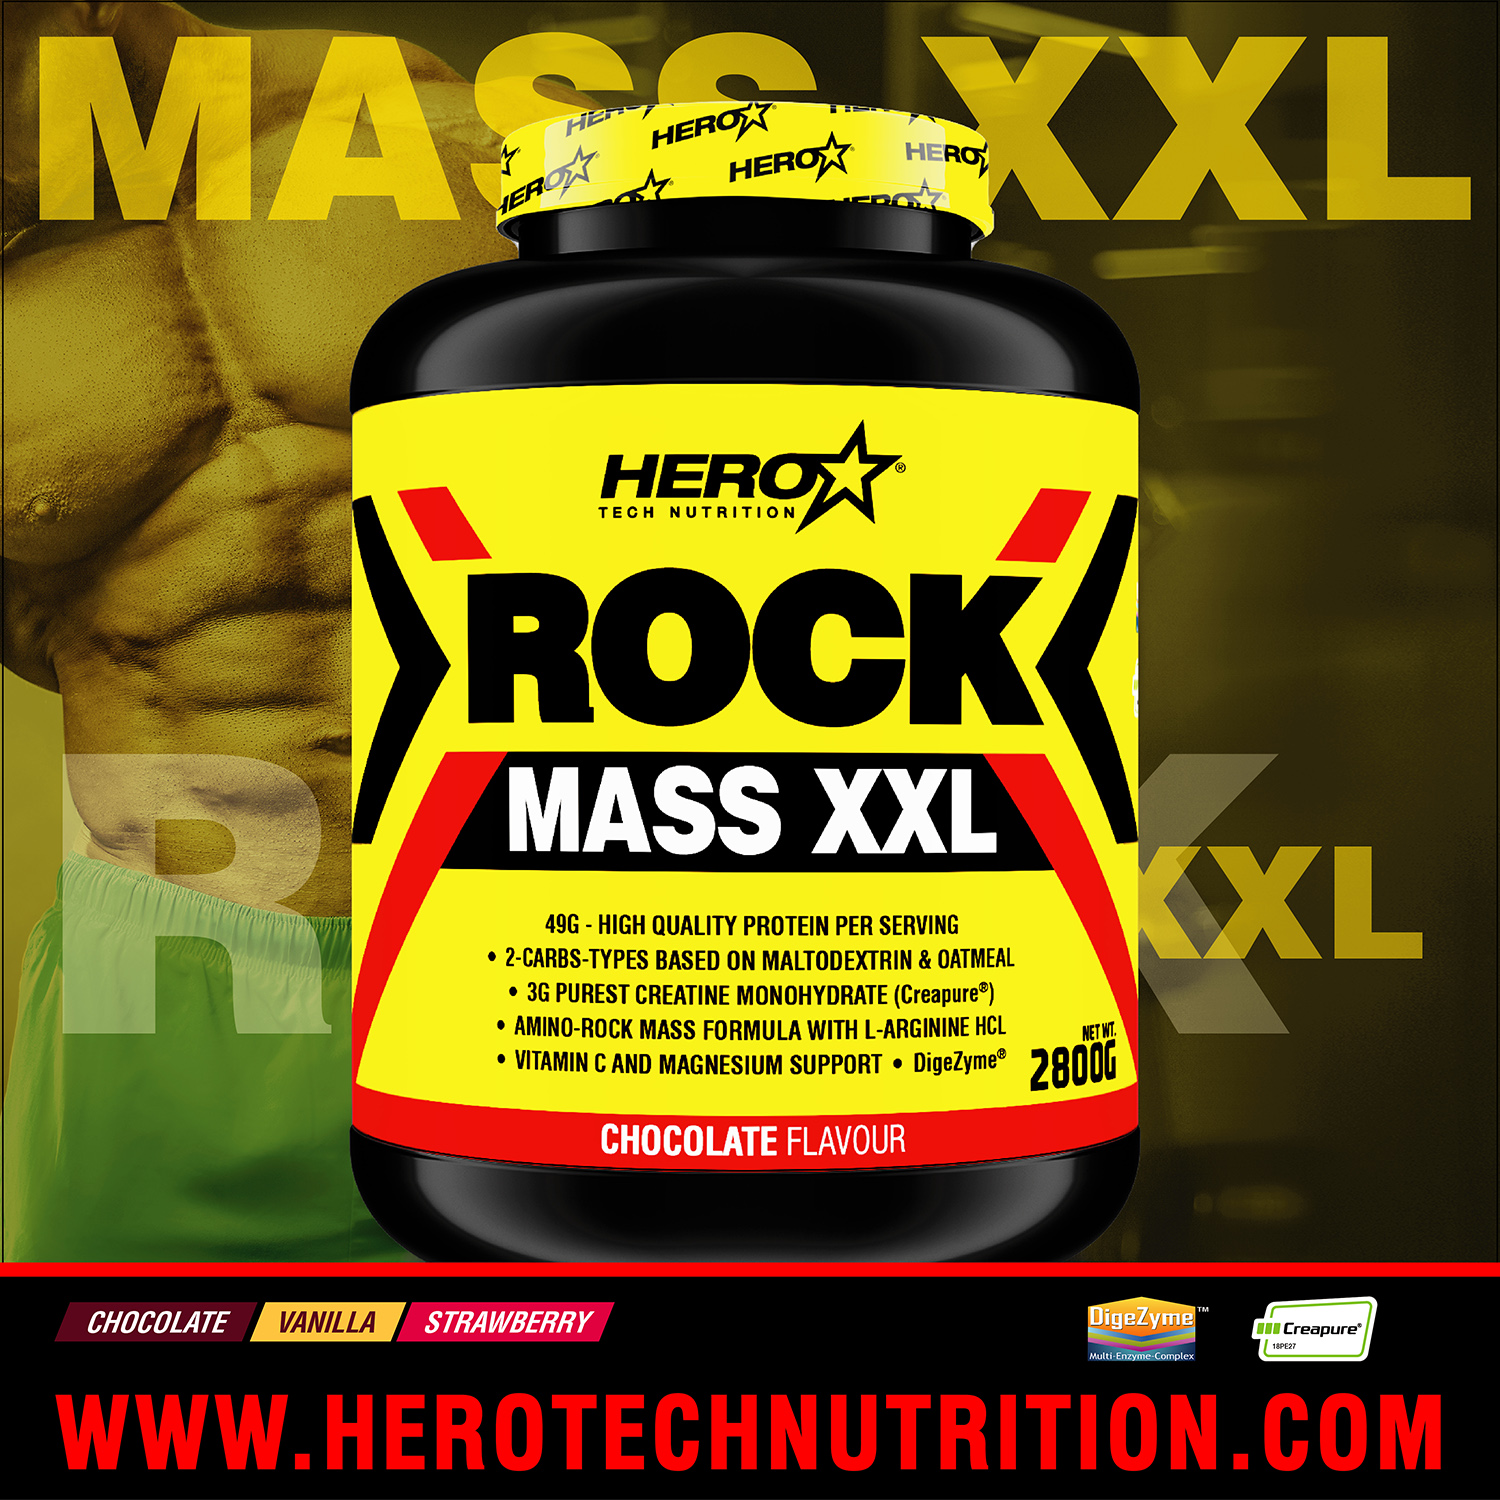 ROCK MASS XXL HERO TECH NUTRITION herotechnutrition